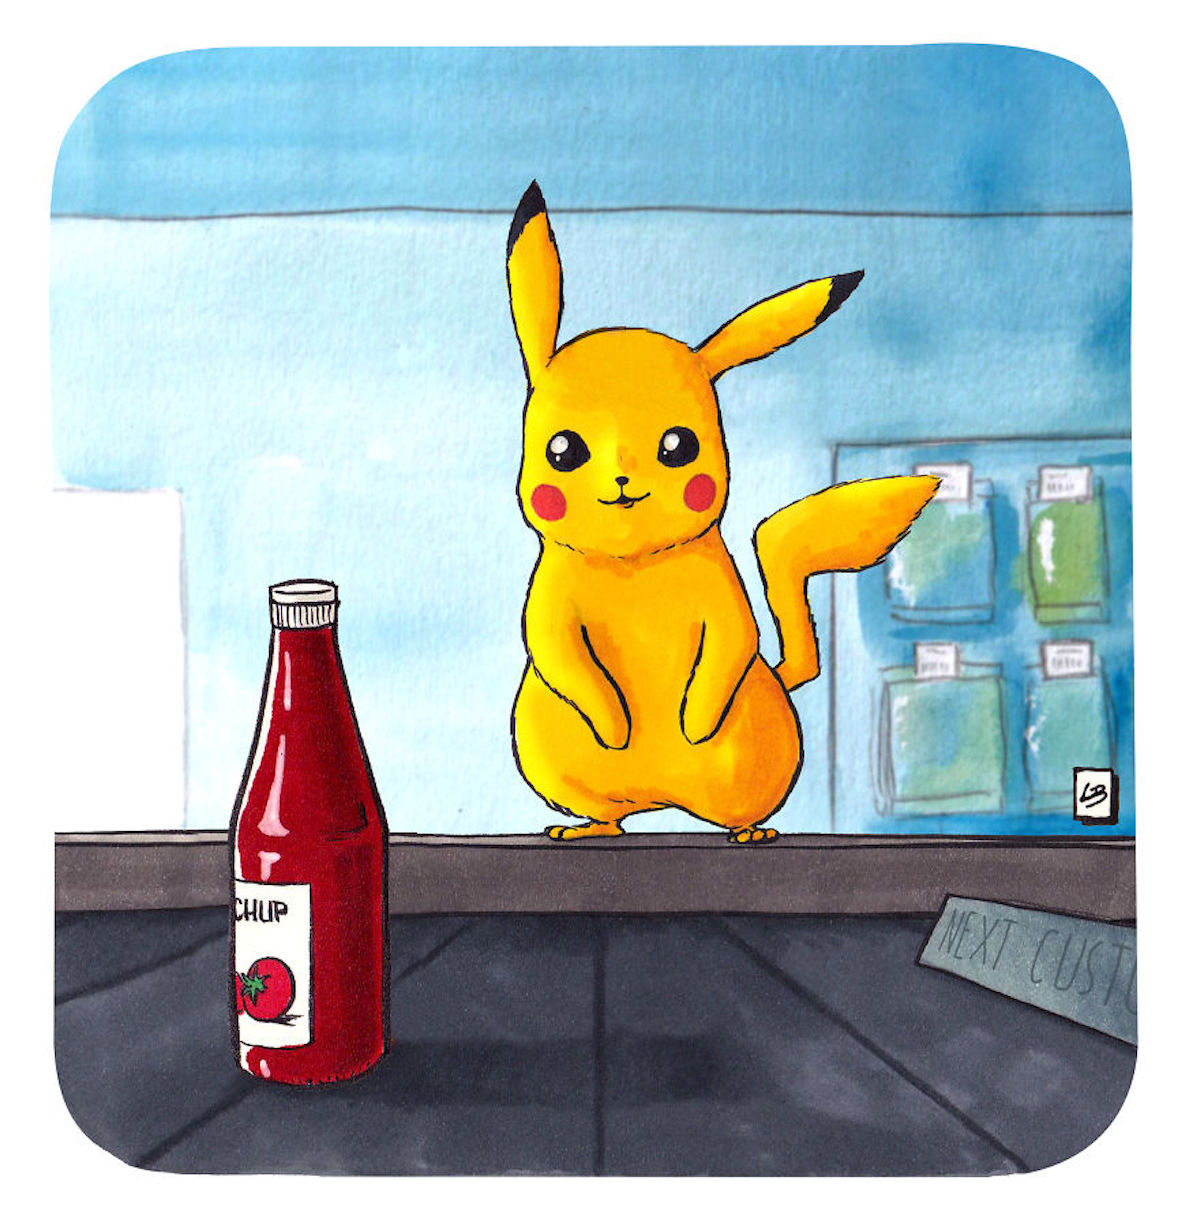 Pikachu ketchup Linda Bouderbala